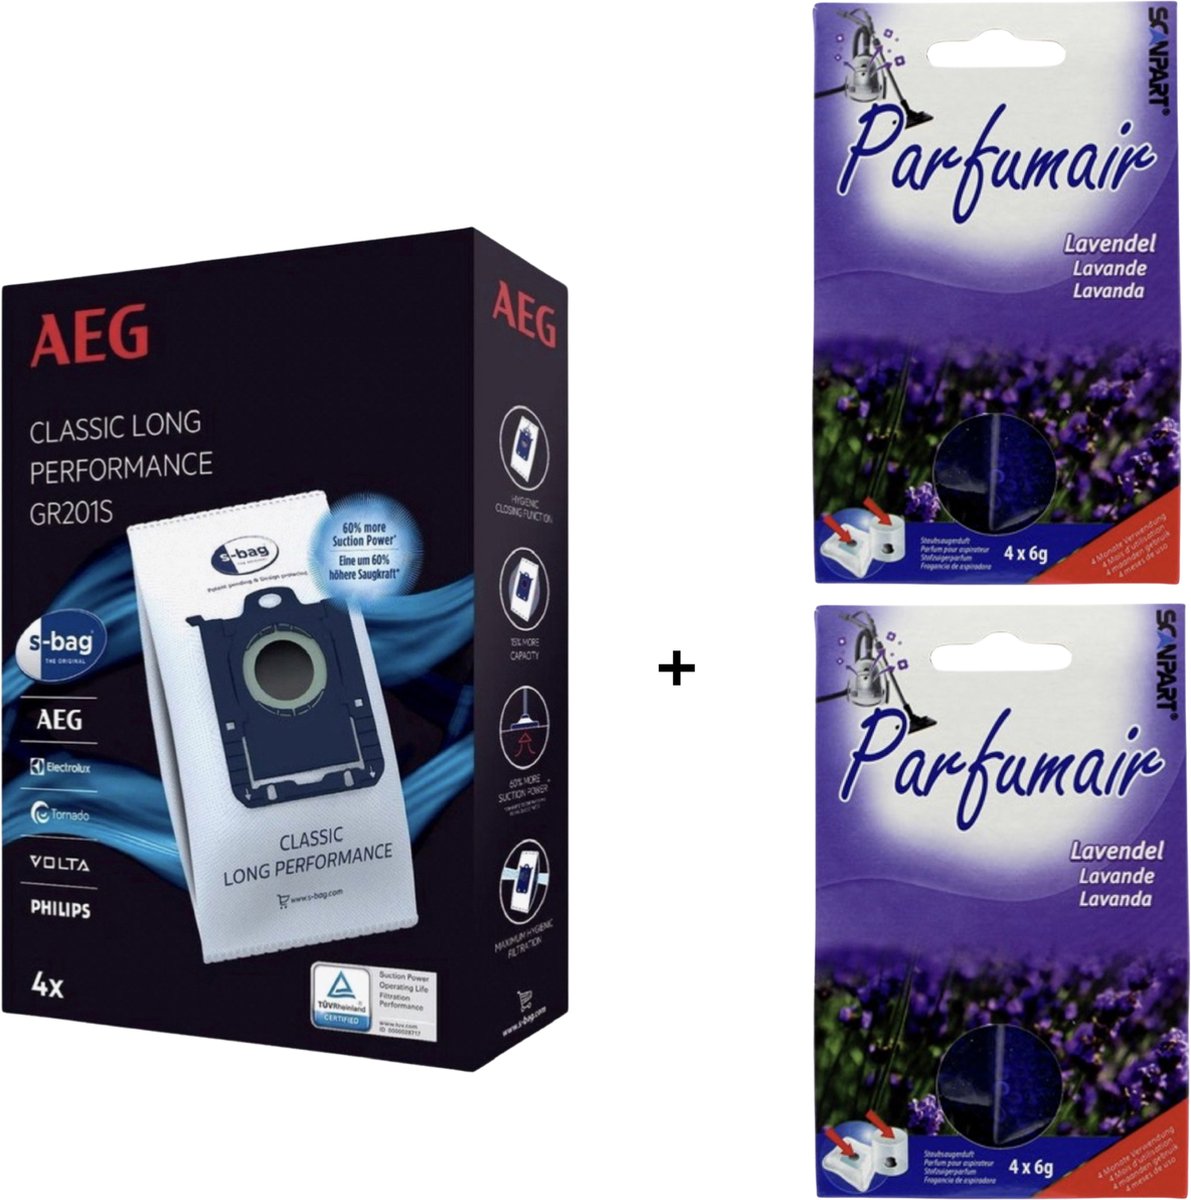 AEG - 1x S-BAG + 2x Geurkorrels (lavendel) - Stofzuigerzakken met geurparels - Voor een frisse geur - COMBIDEAL